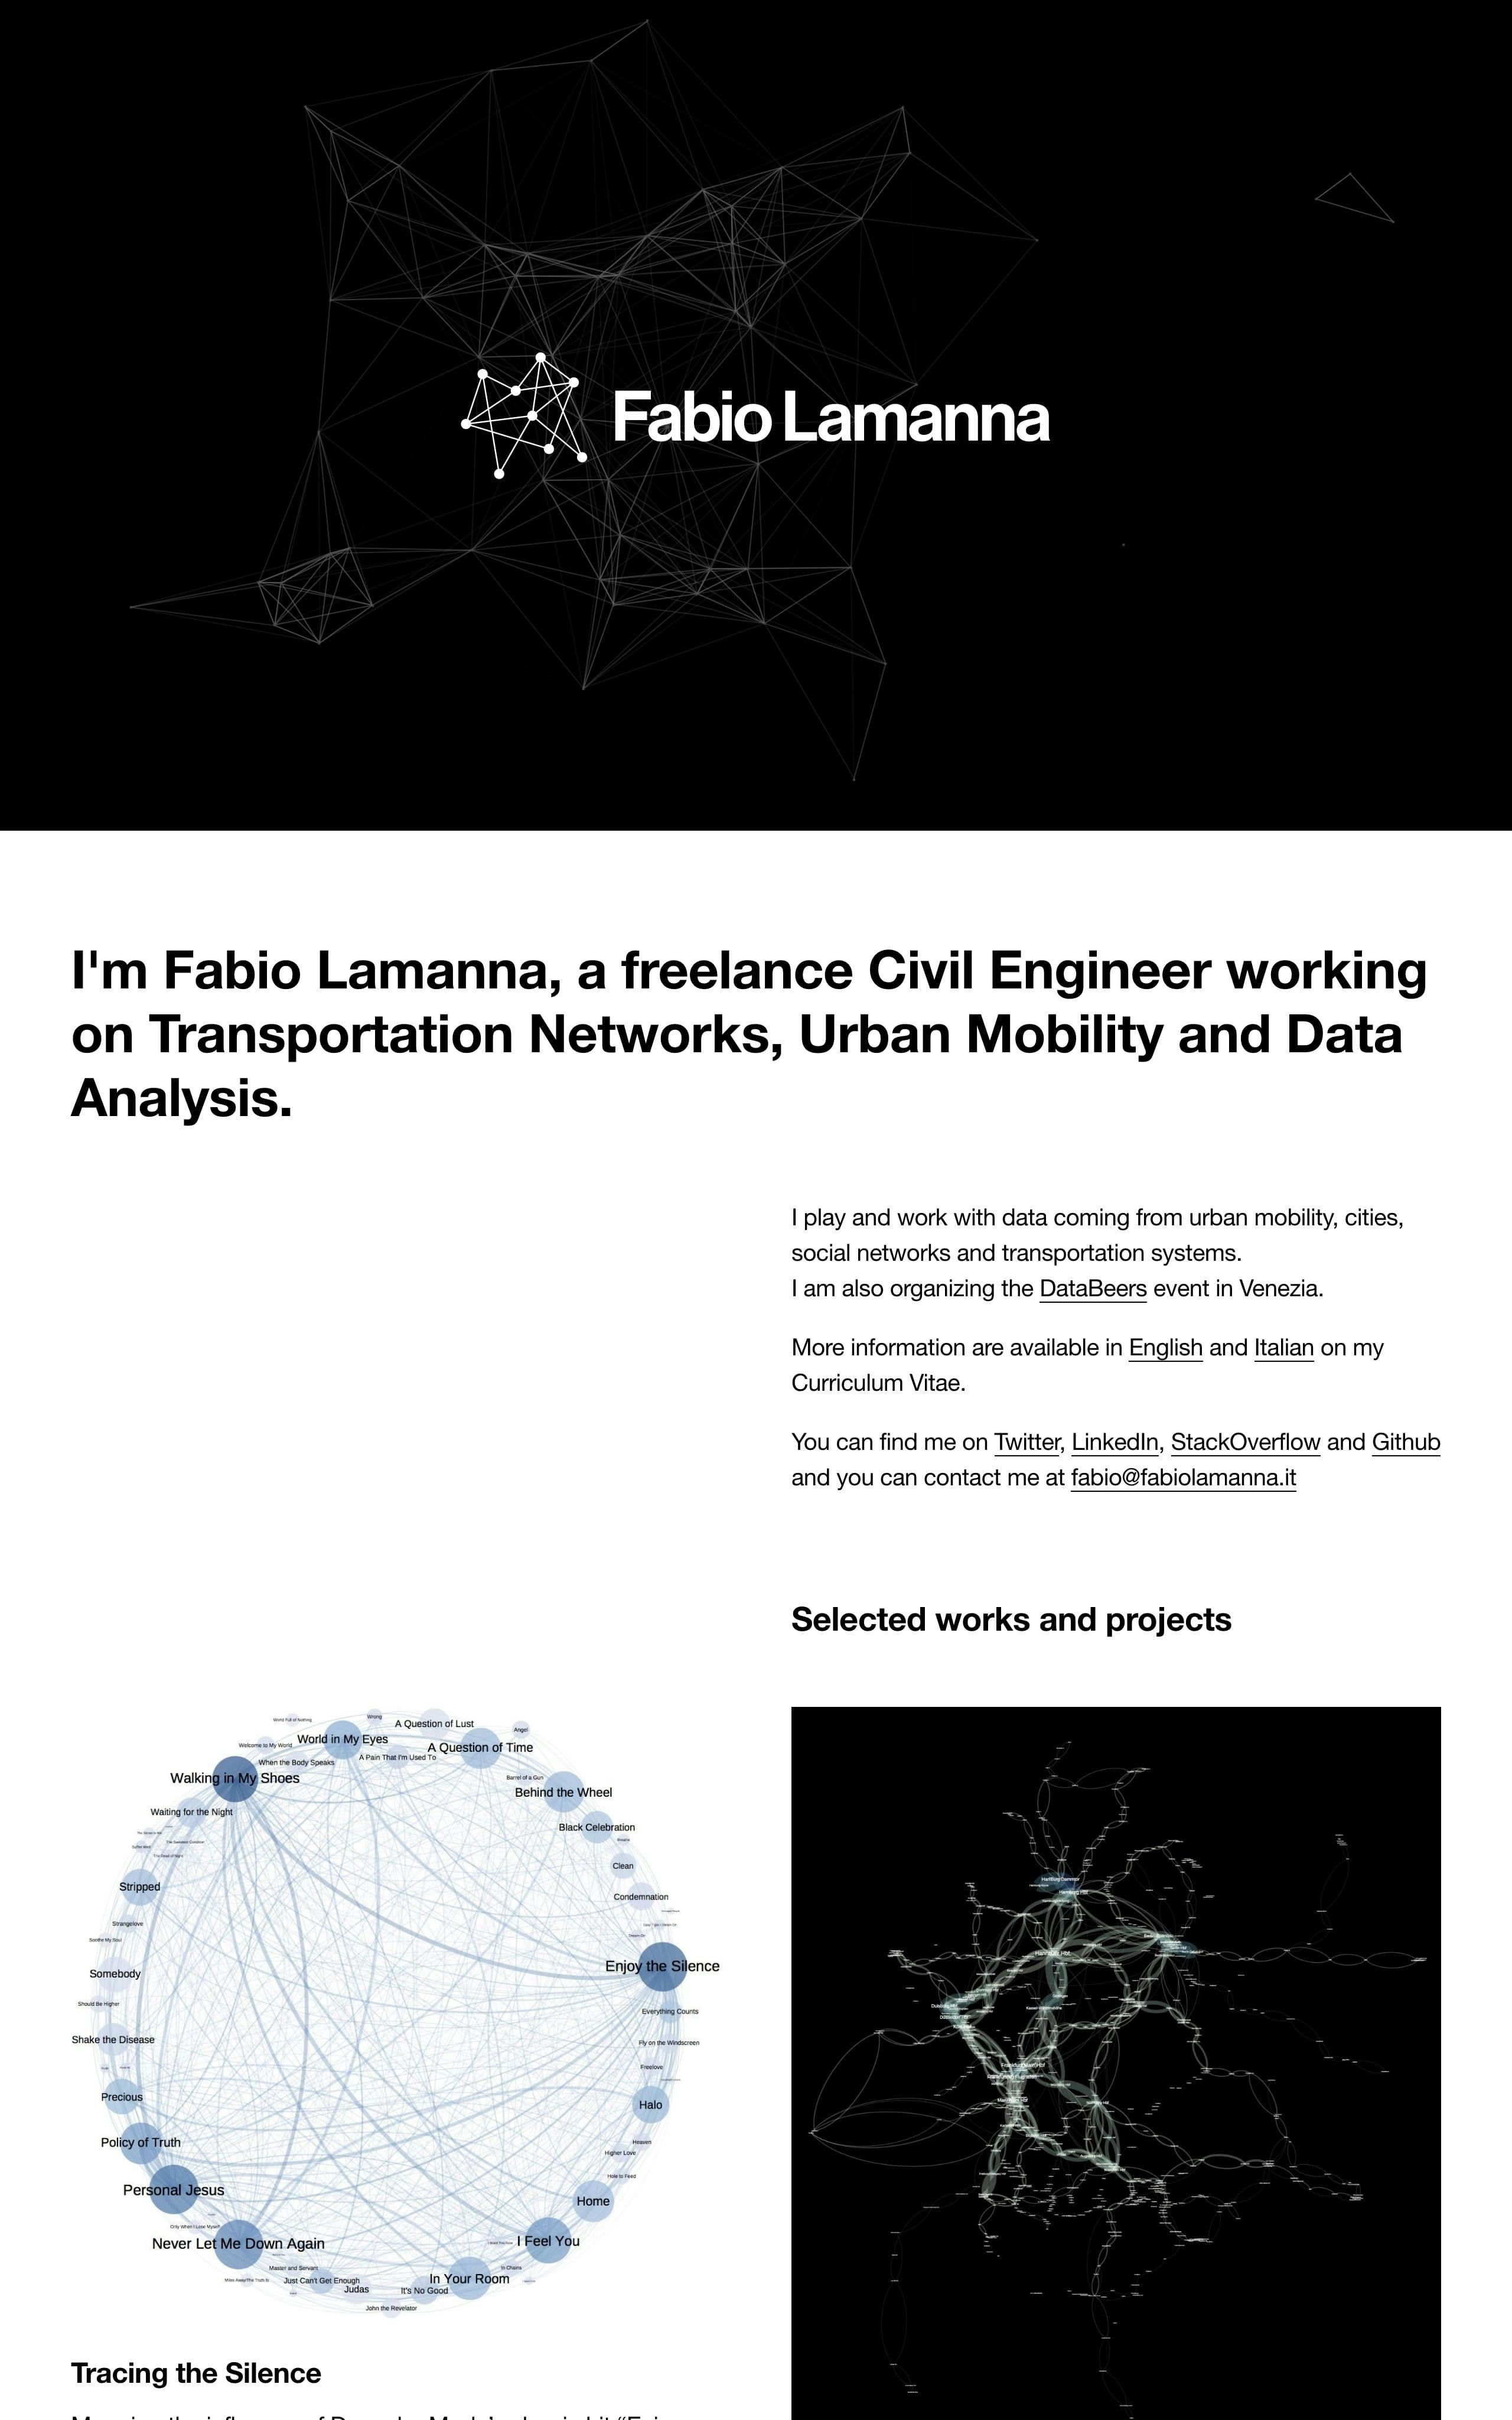 Fabio Lamanna Website Screenshot